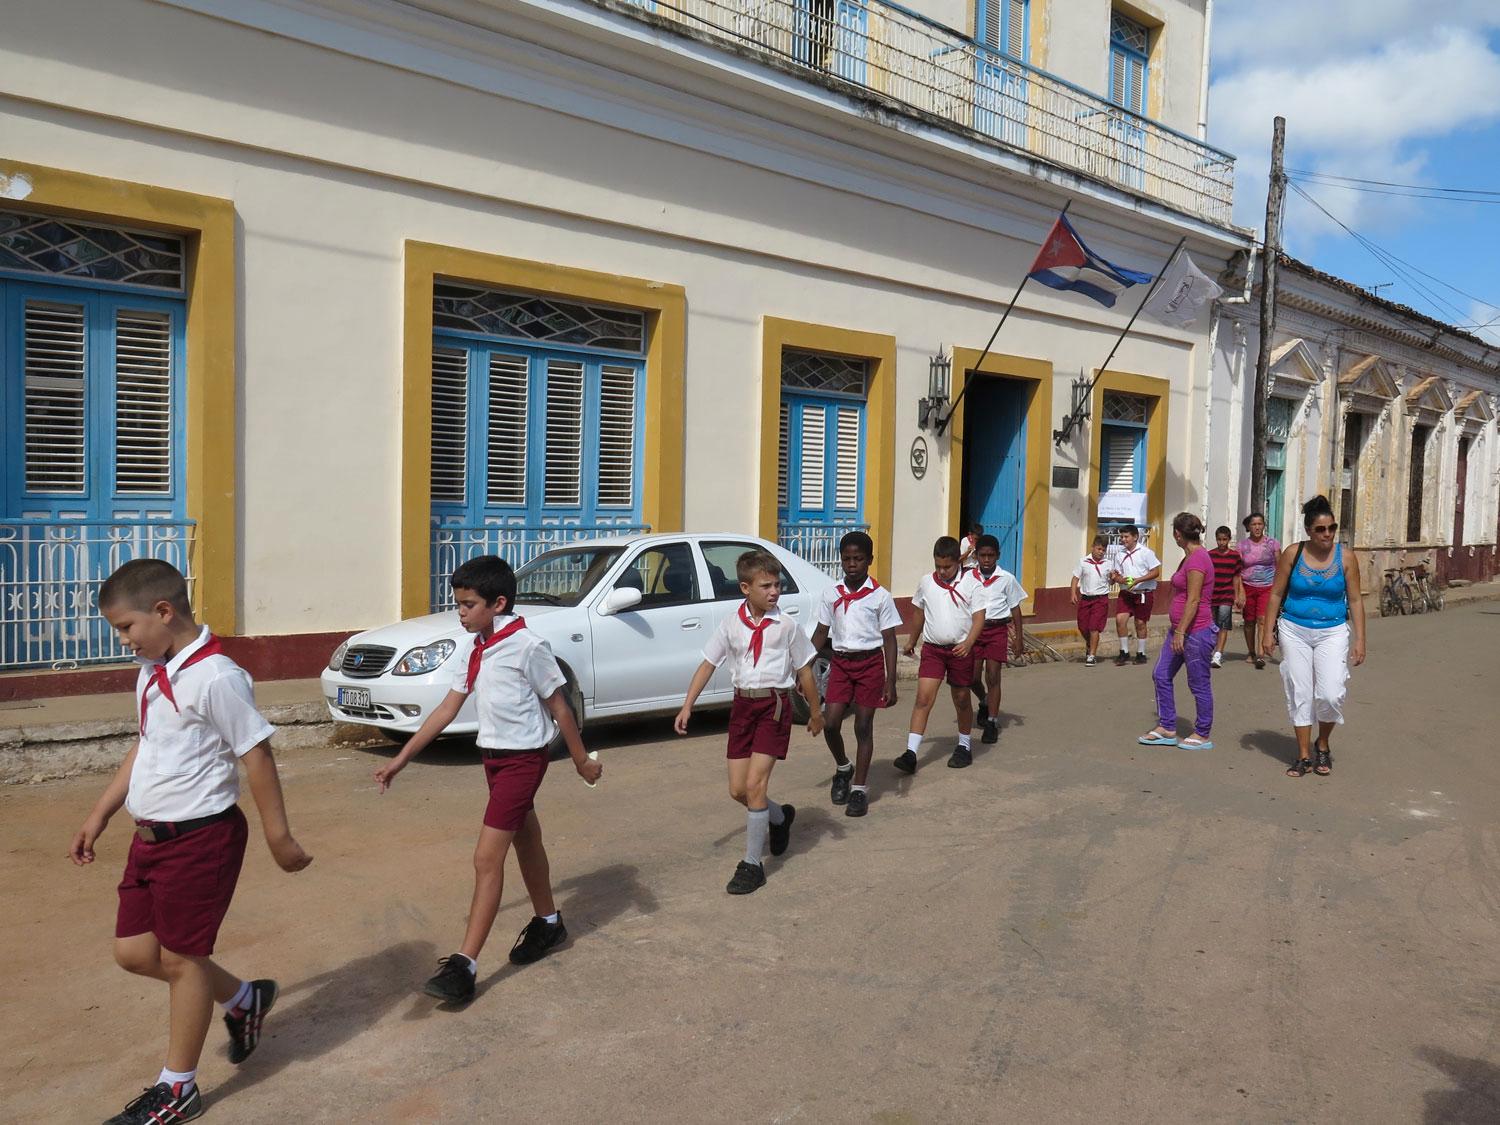 Bilen osäkert parkerad vid hotell Mascotte i Remedios. En skolklass passerar diciplinerat förbi.